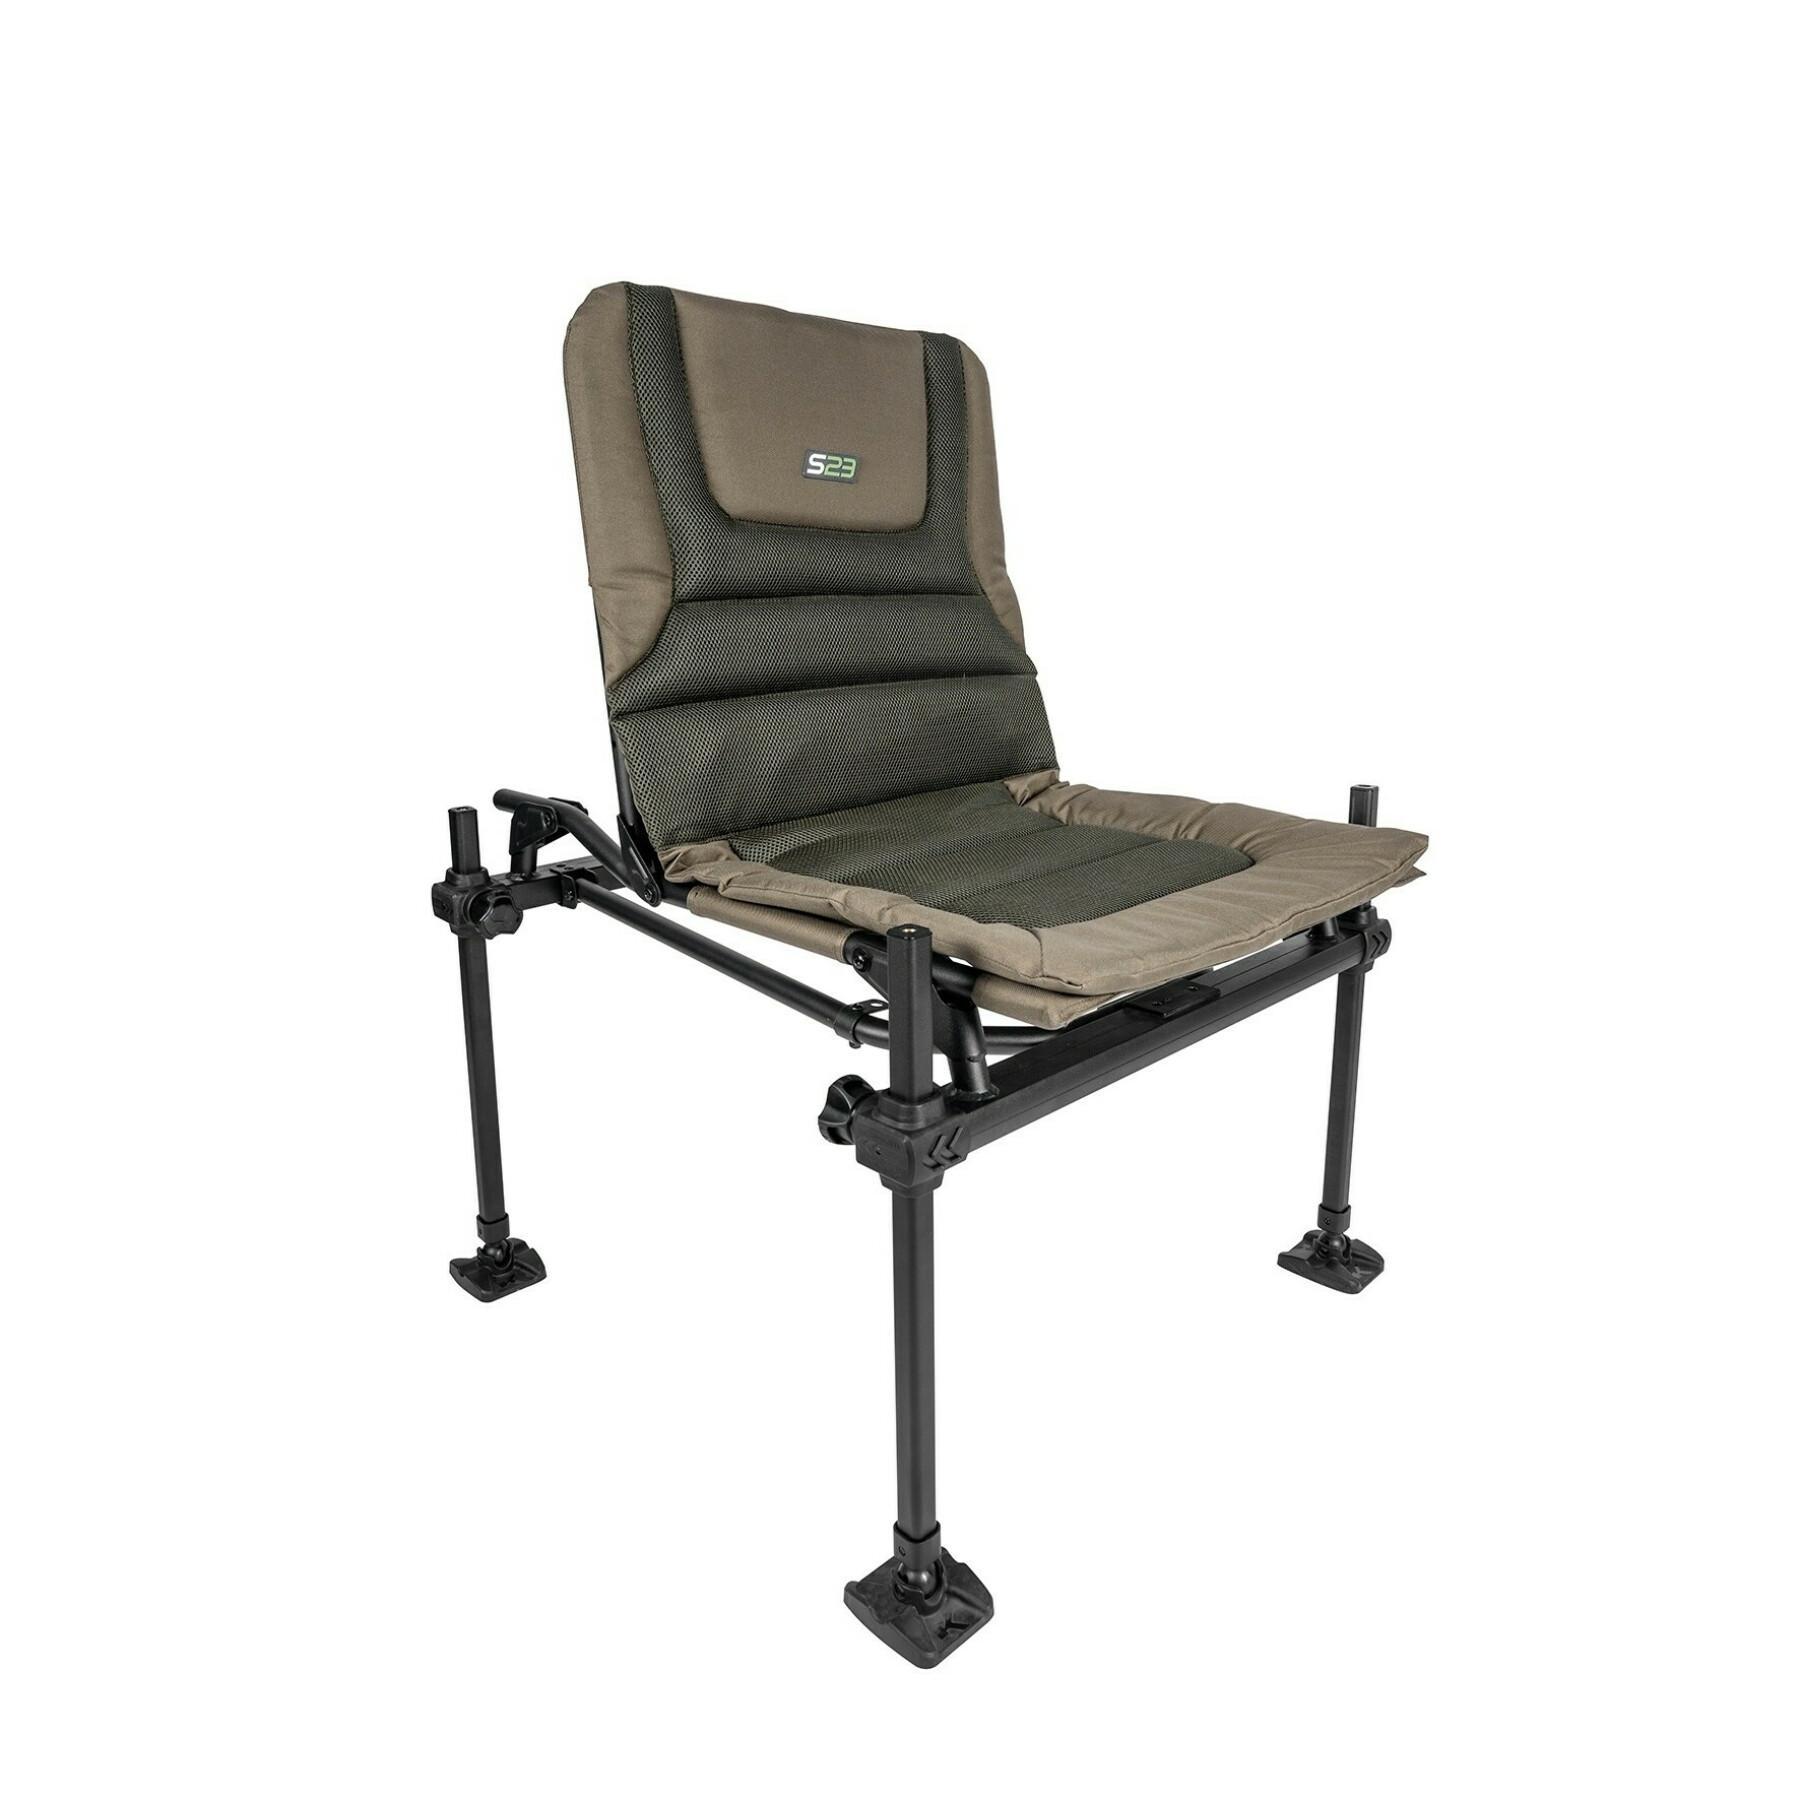 Kit de apoio de braço de cadeira standard Korum S23